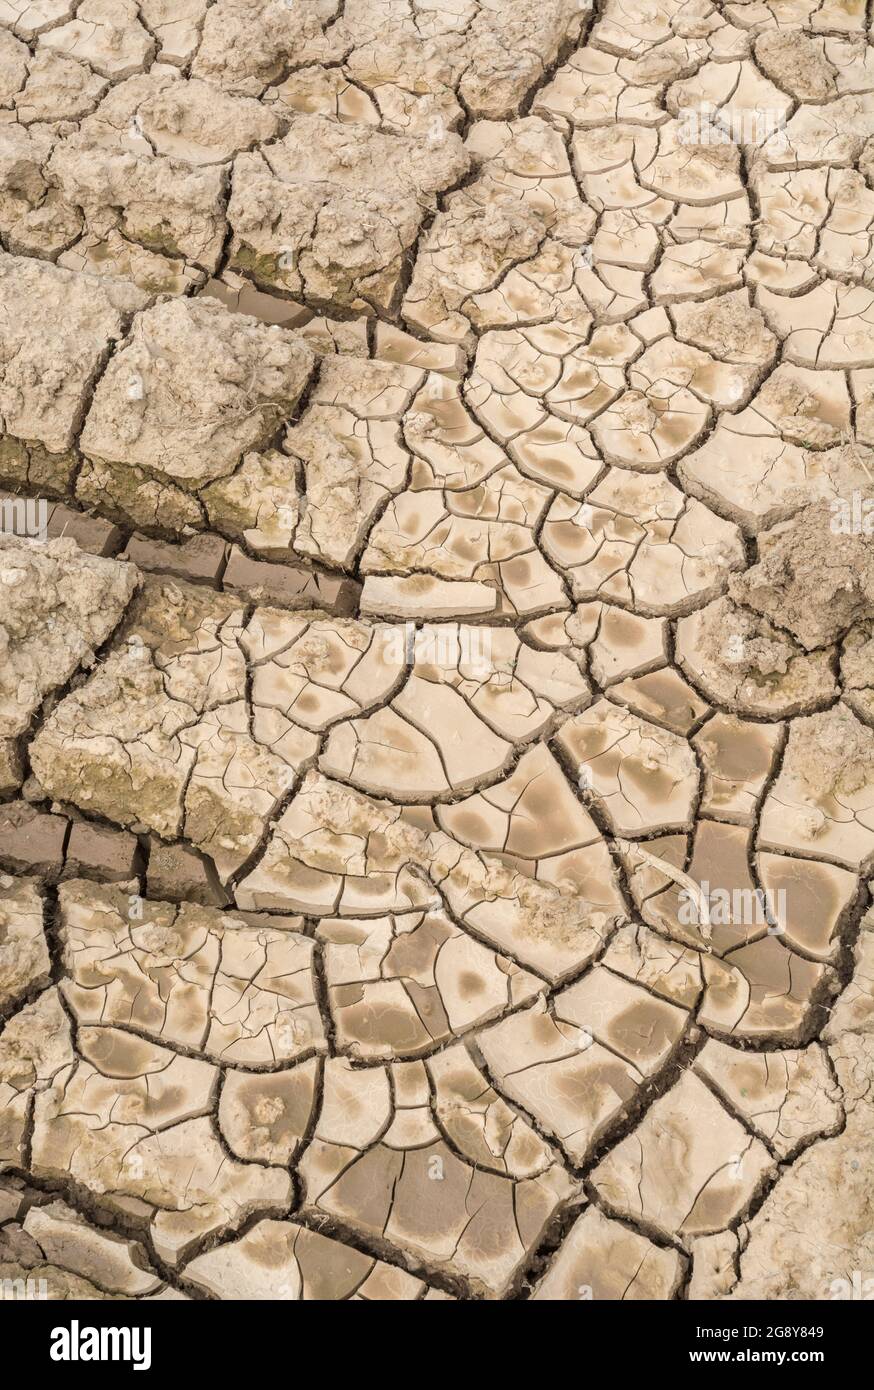 Prise de vue d'un champ sec fissuré. Pour la canicule 2022, la sécheresse au Royaume-Uni, la terre ariée, les pertes de récolte, la canicule européenne/américaine, la saison chaude de l'été, les terres agricoles sèches au Royaume-Uni Banque D'Images